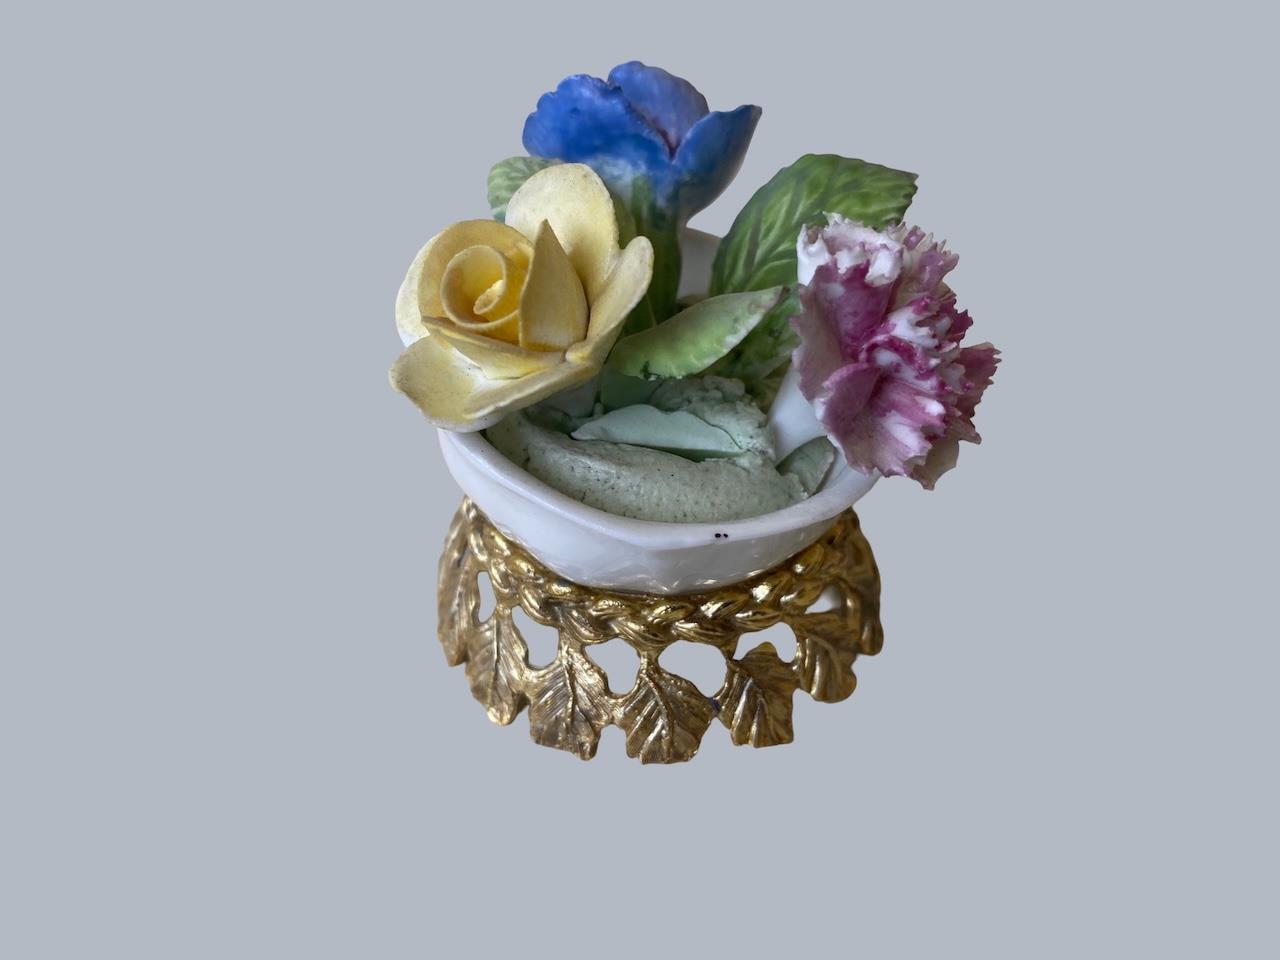 Vtg Royal Adderley Bone China Porcelain Floral Flowers on metal stand England